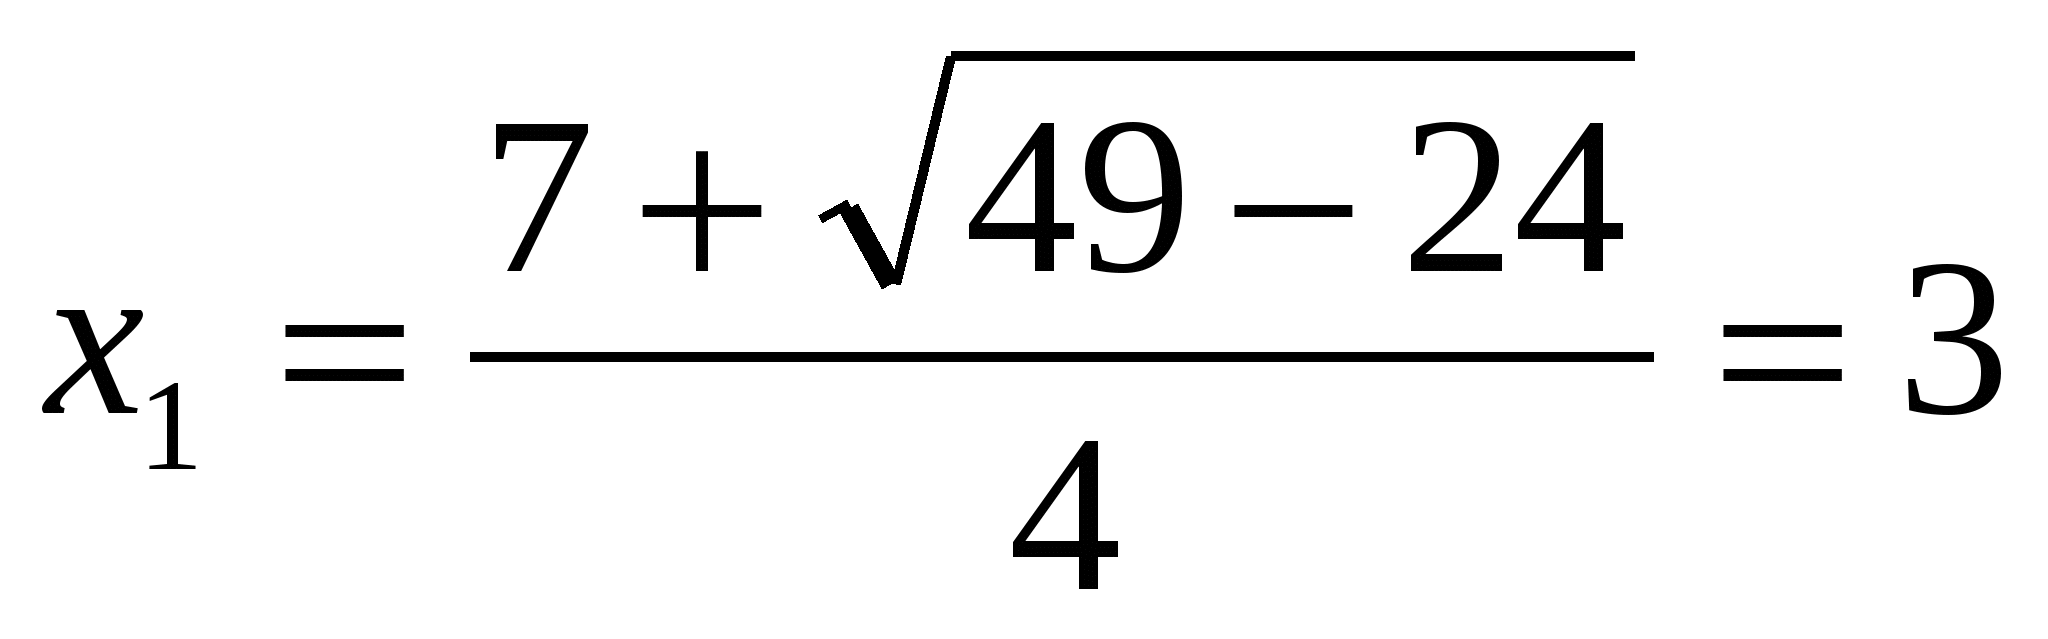 Решение уравнений урок 8 класс